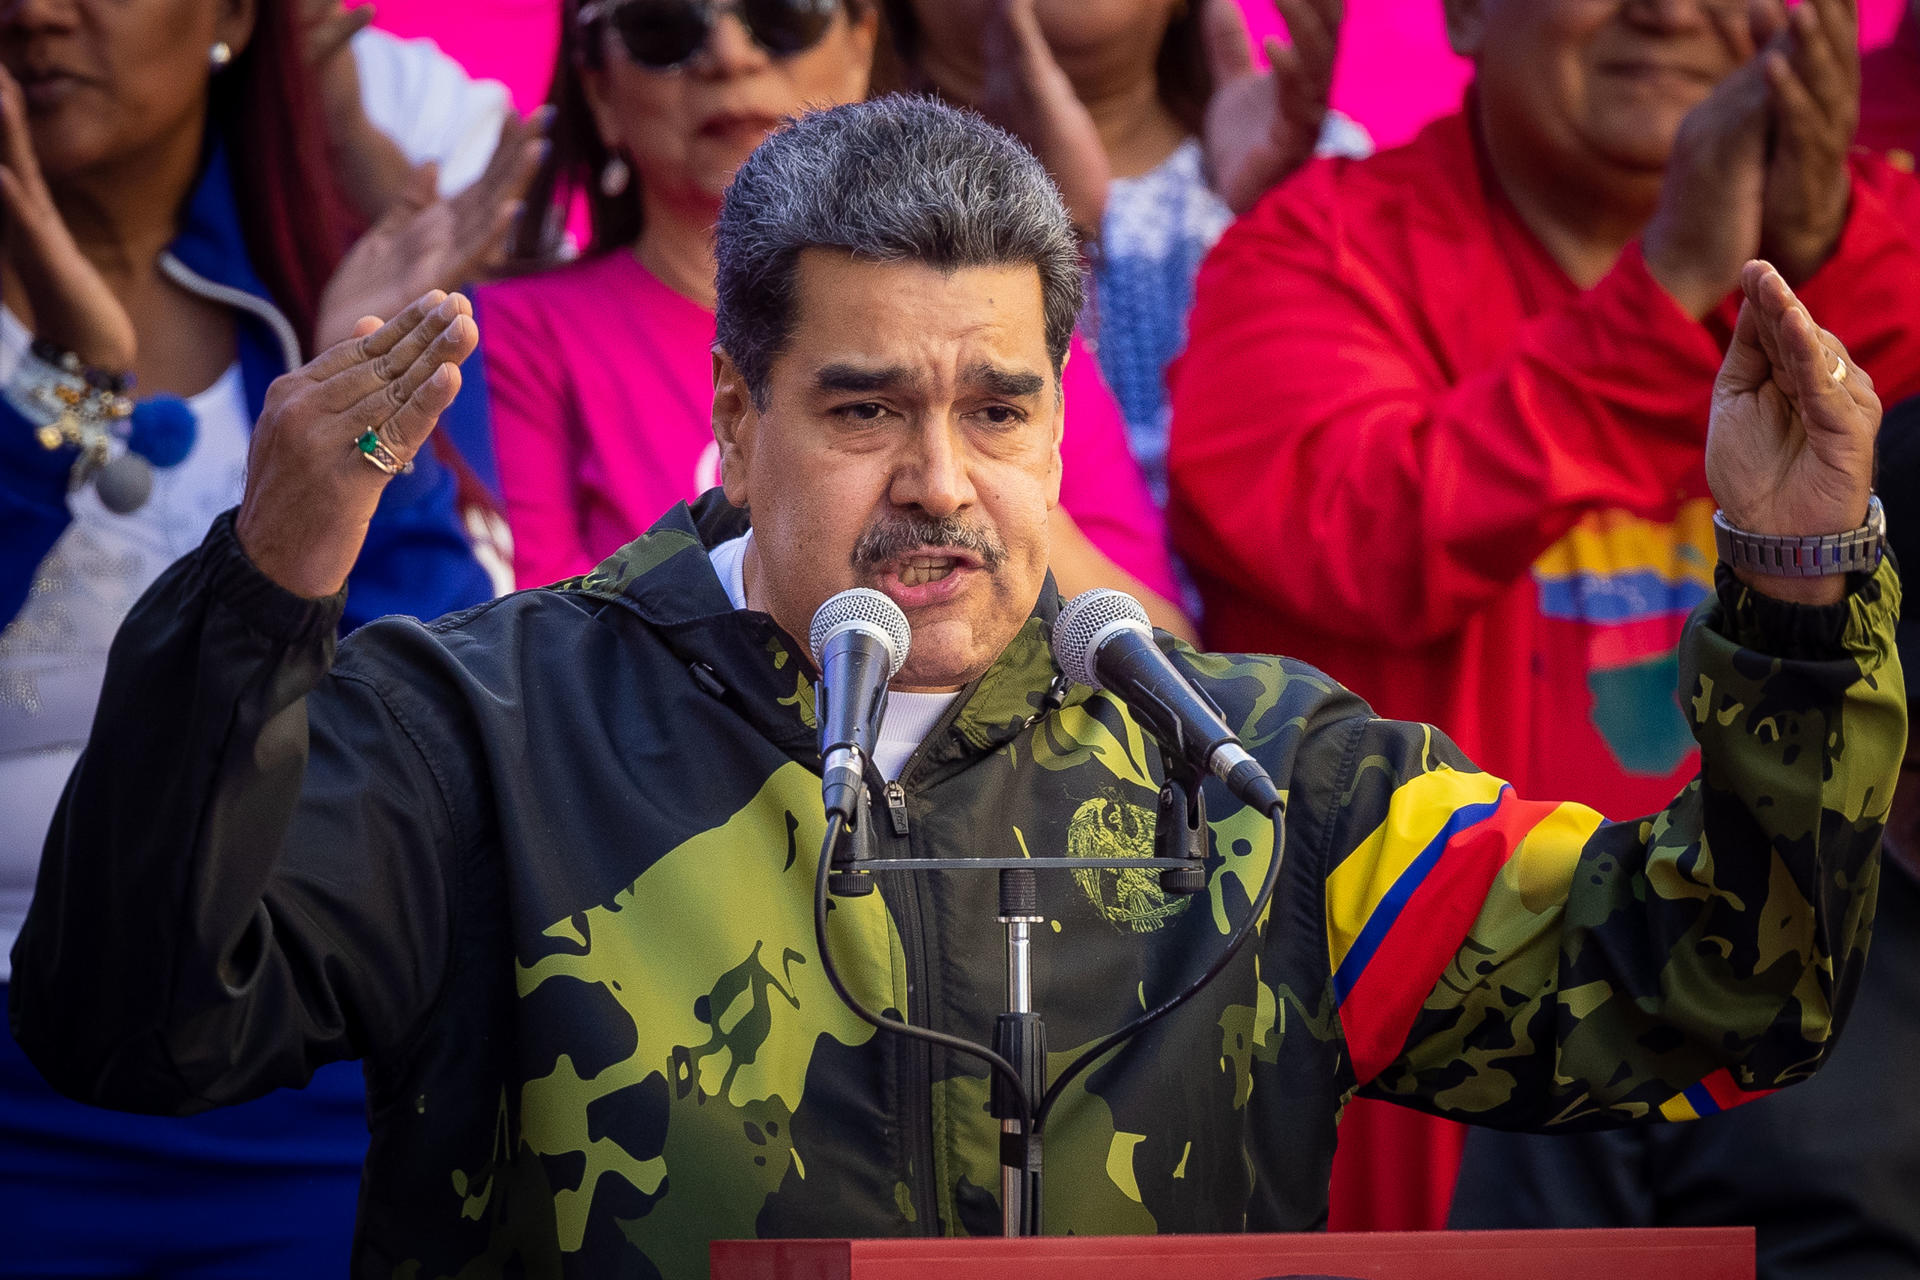 Fotografía de archivo en la que se registró al presidente de Venezuela, Nicolás Maduro, durante un acot público, en Caracas (Venezuela). EFE/Rayner Peña.